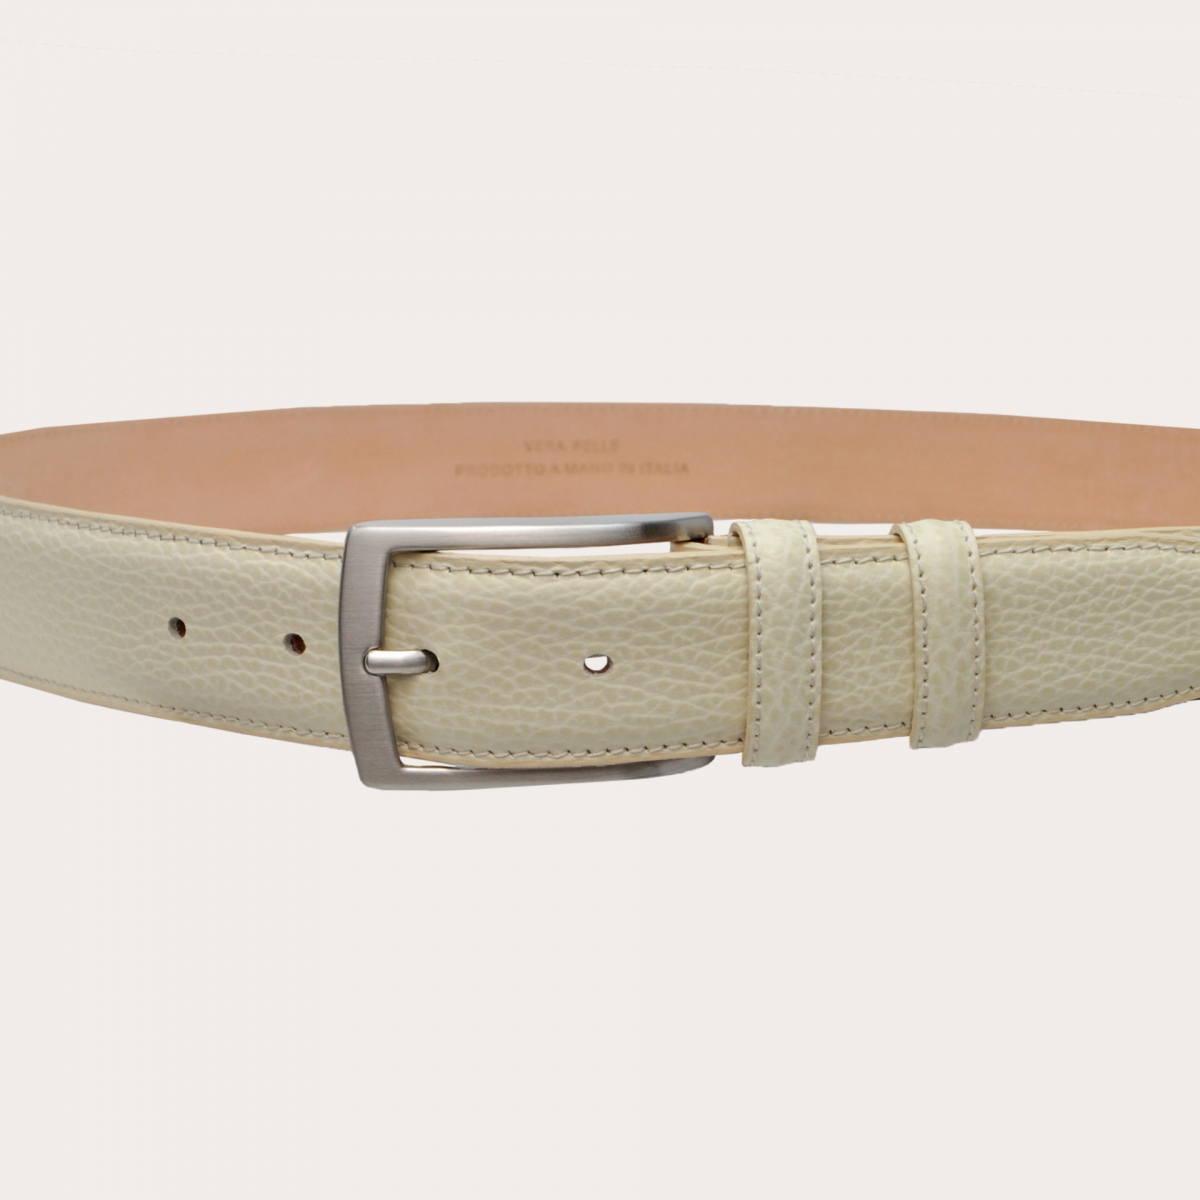 BRUCLE Cinturón de cuero genuino elegante y moderno, color blanco crema.